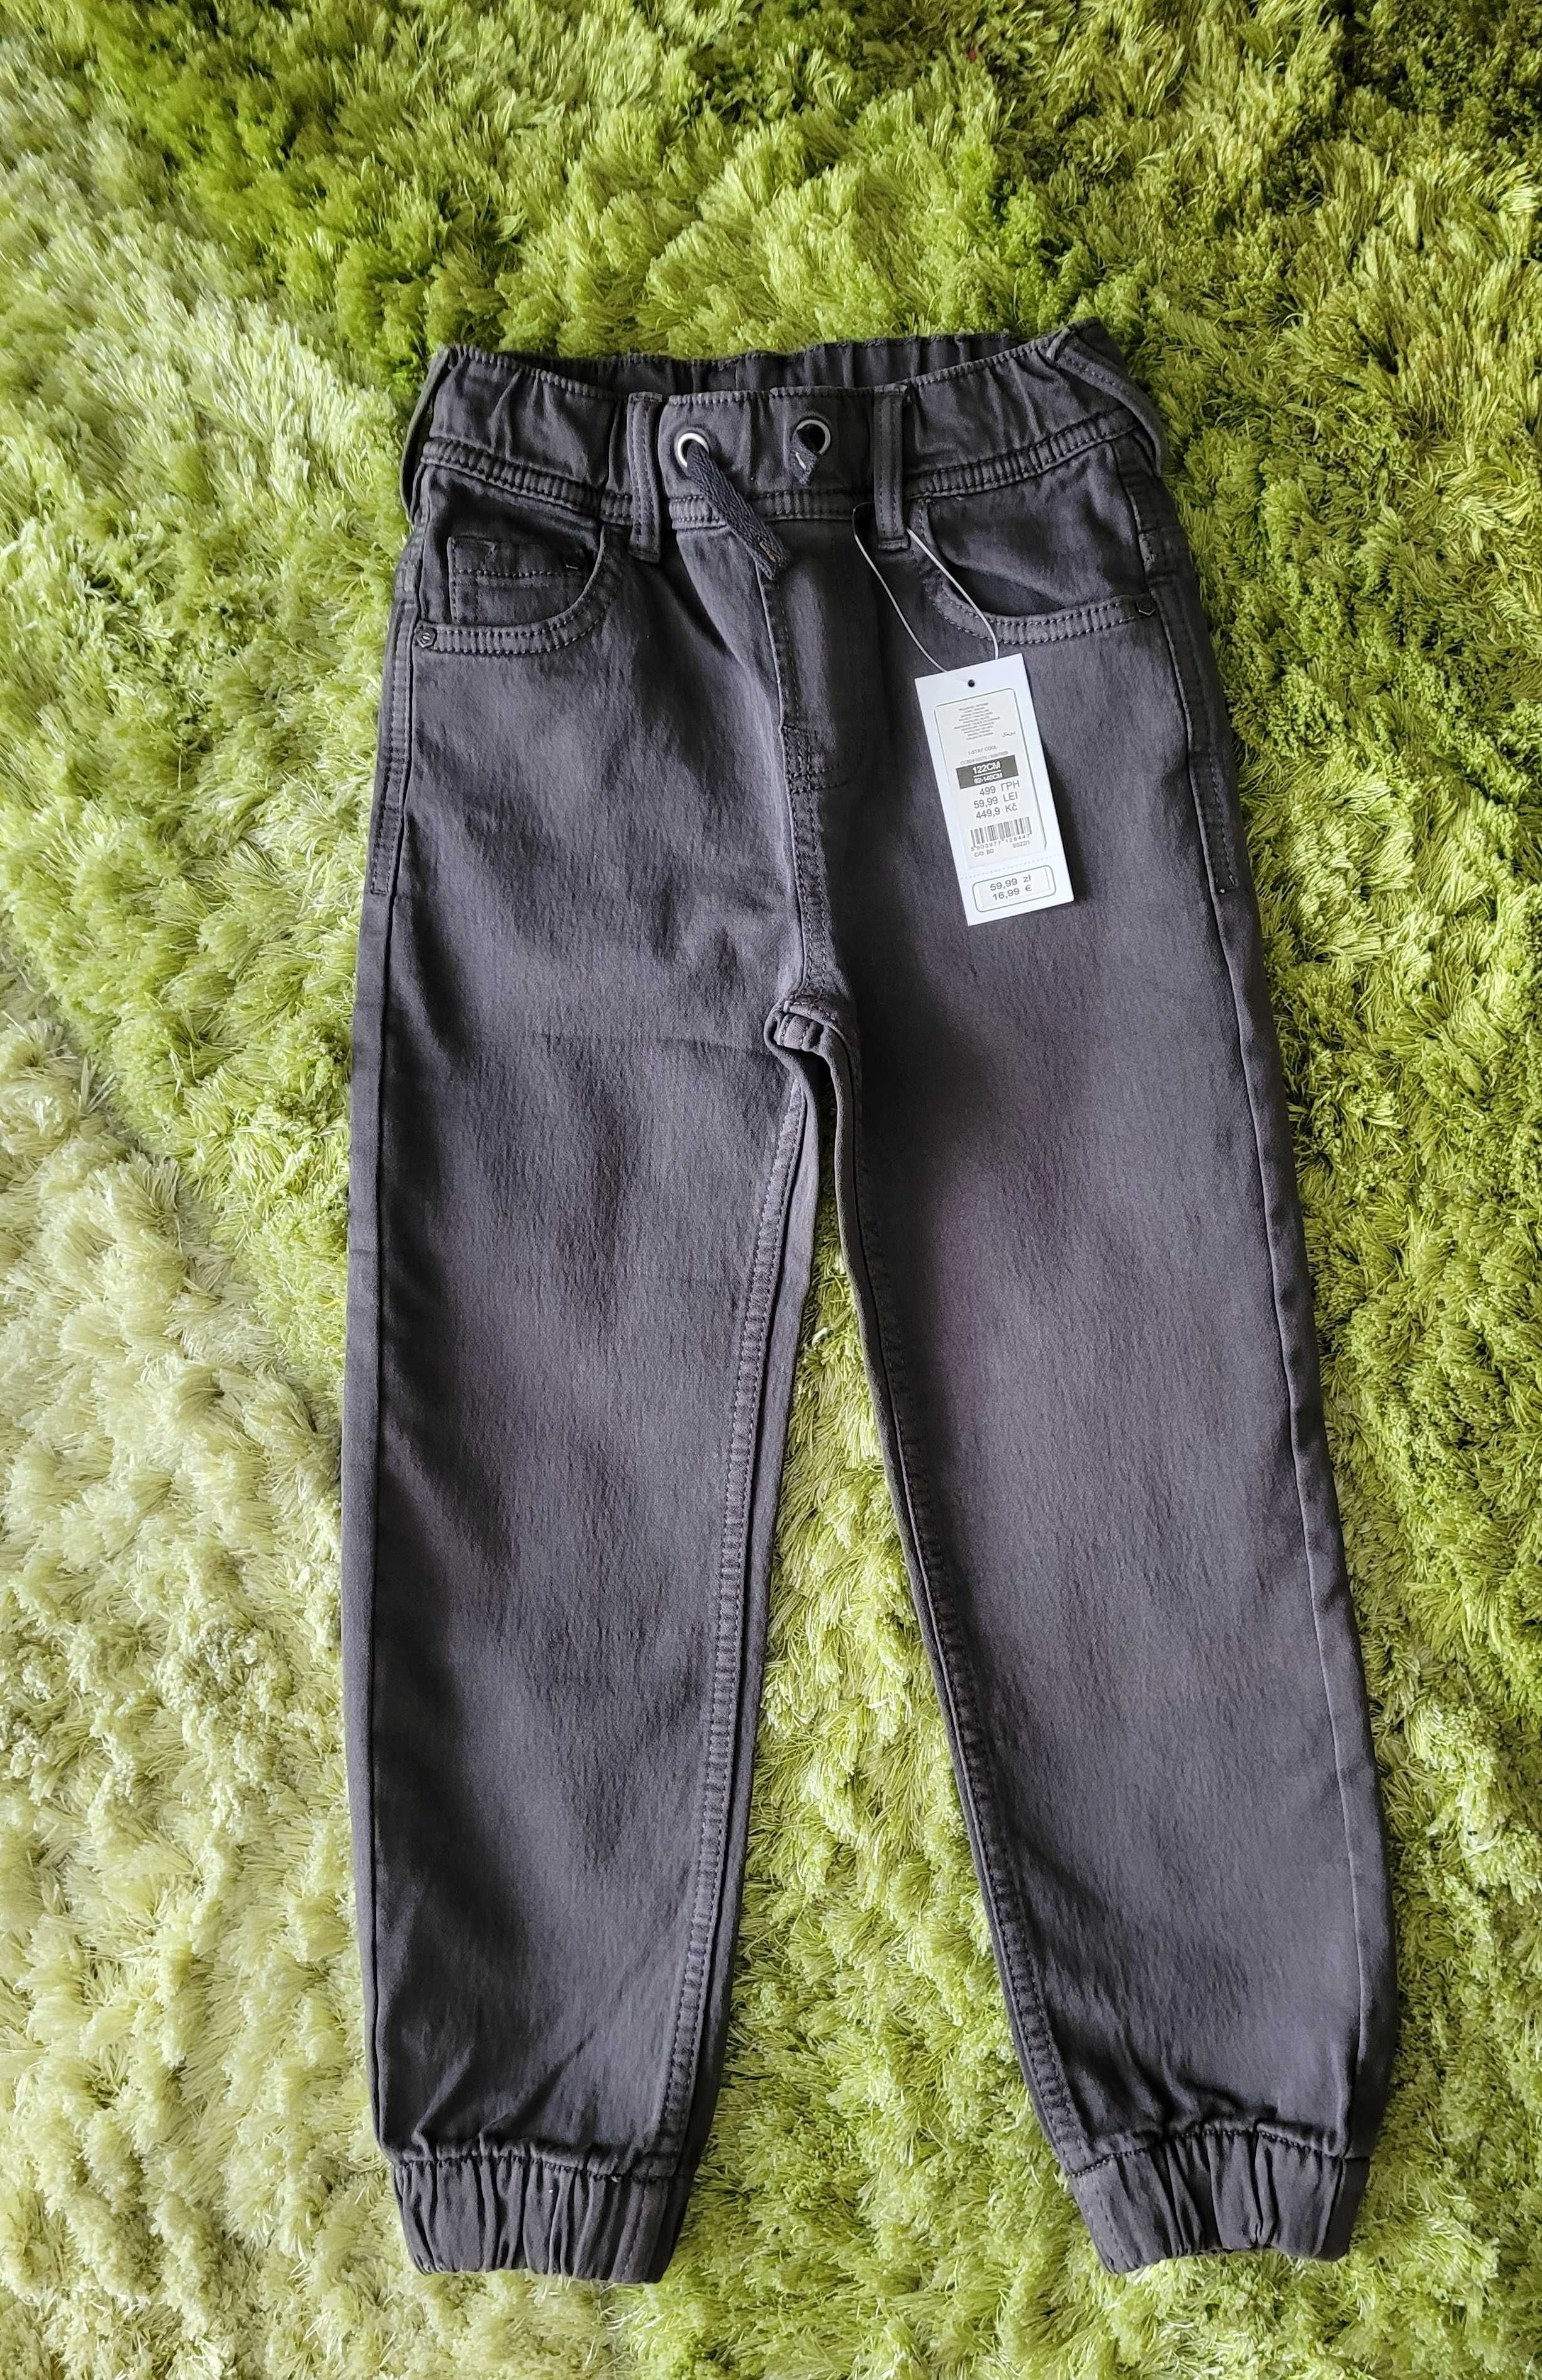 Spodnie jeansowe  dla chłopca, joggery ciemnoszare, rozmiar 122, nowe